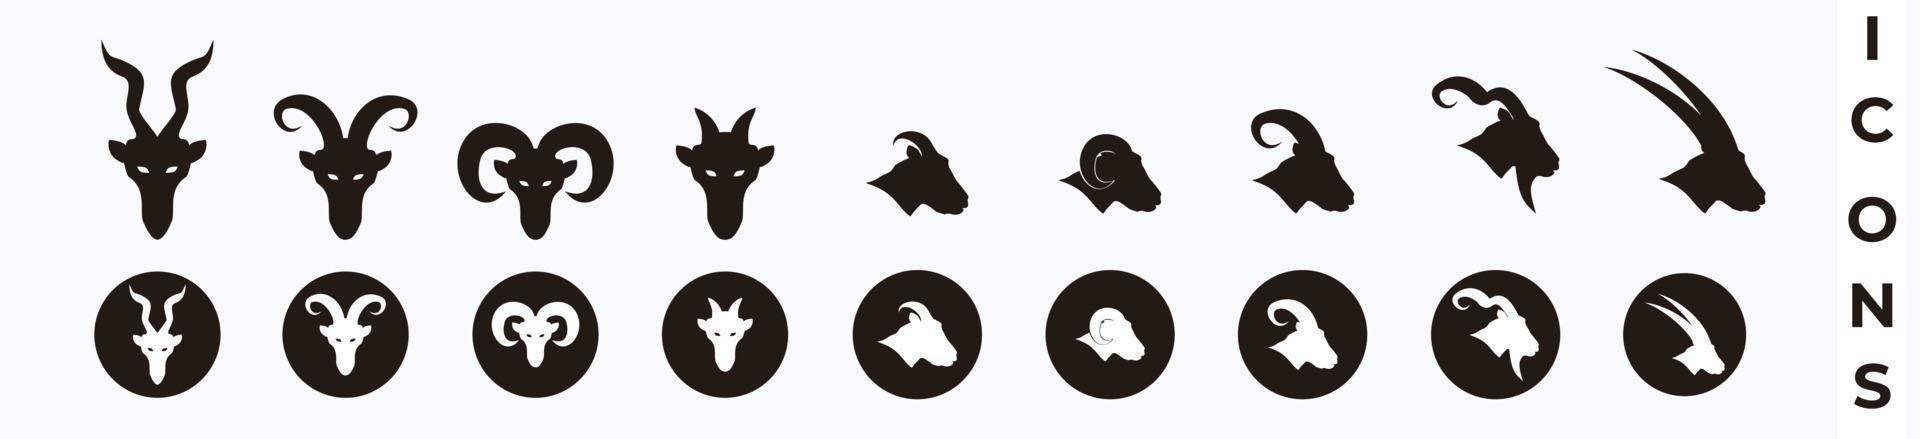 chèvre, mouton, agneau, jeu d'icônes de tête de chèvre à grande corne. Chèvre tête silhouette isolé sur blanc vecteur